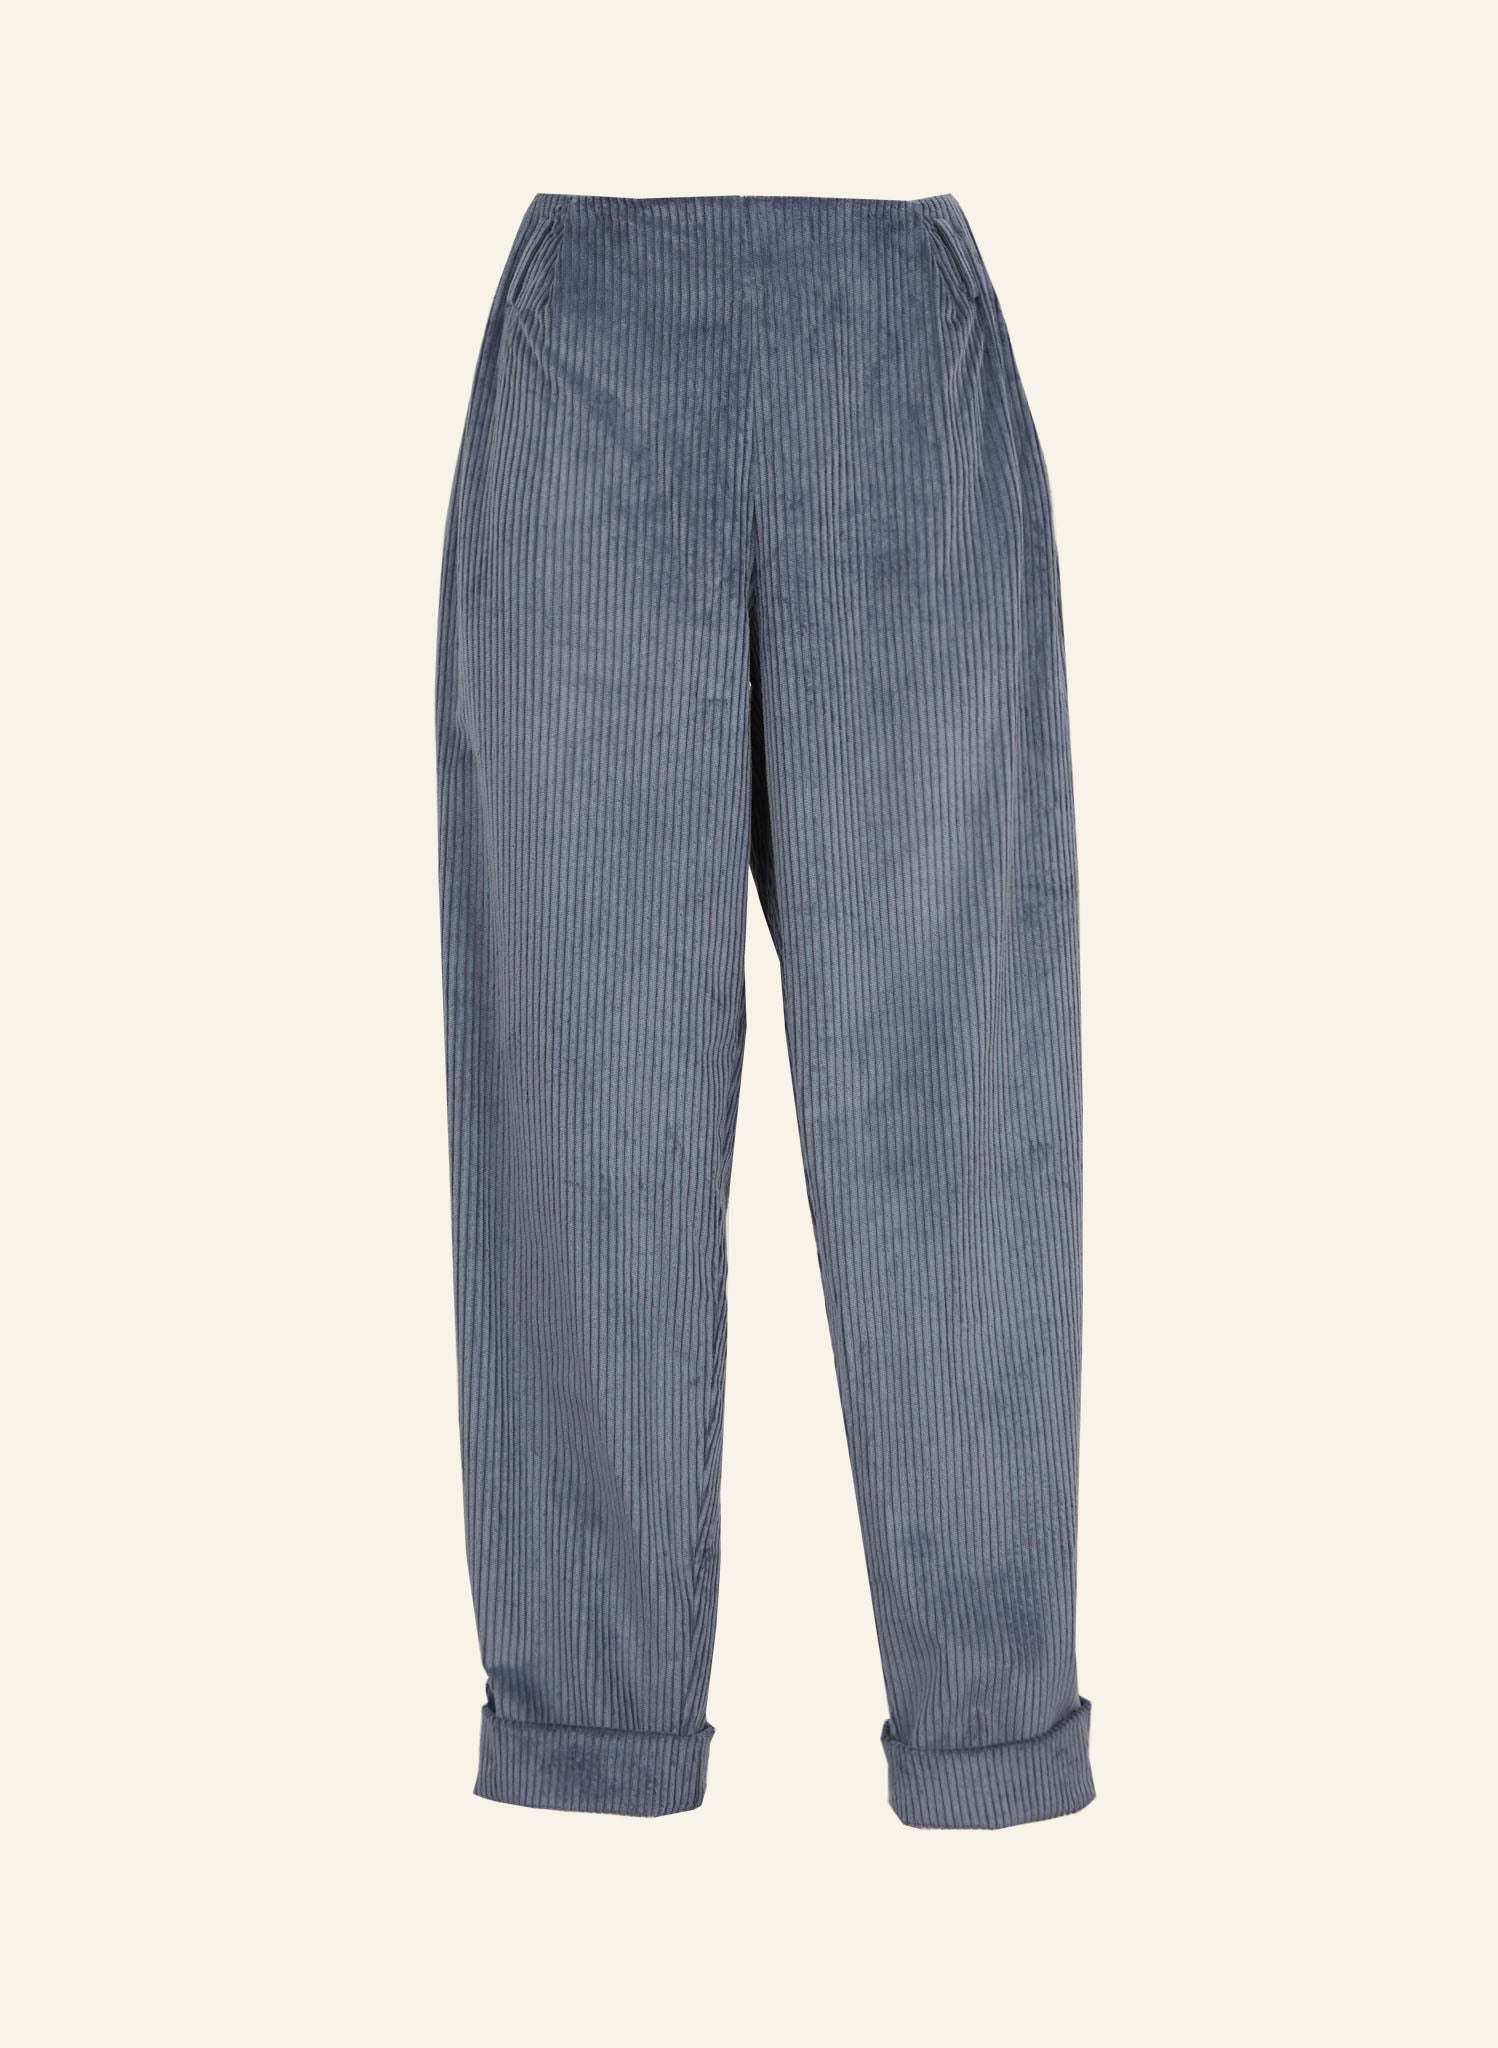 Buy Blue Trousers  Pants for Men by SCOTCH  SODA Online  Ajiocom